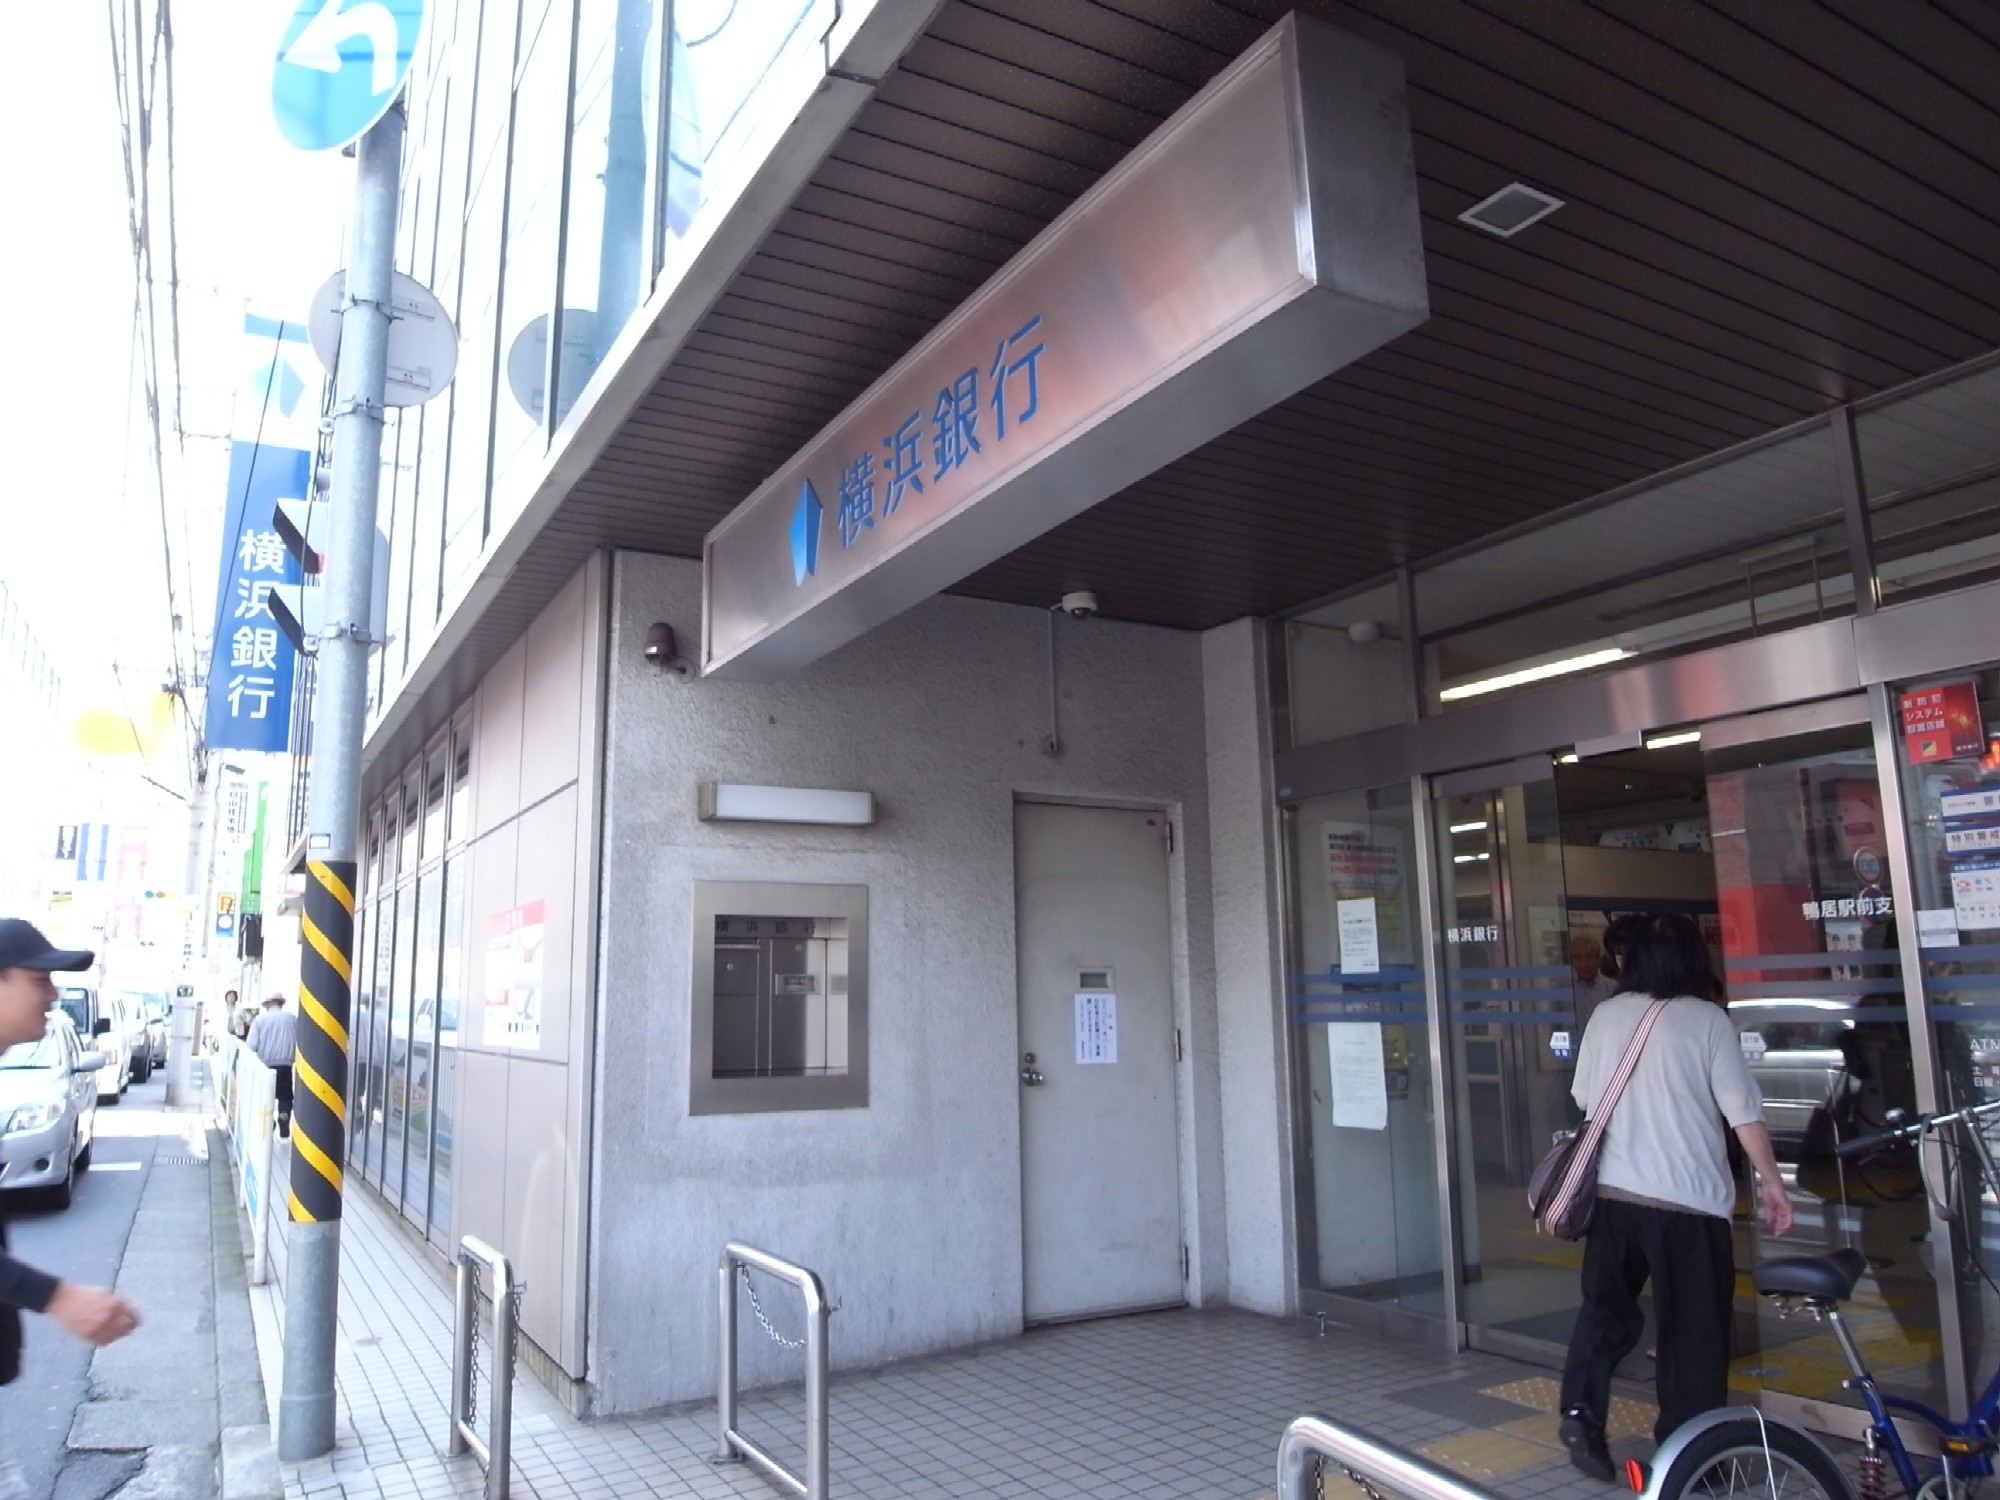 Bank. Bank of Yokohama lintel until Station Branch (Bank) 1384m